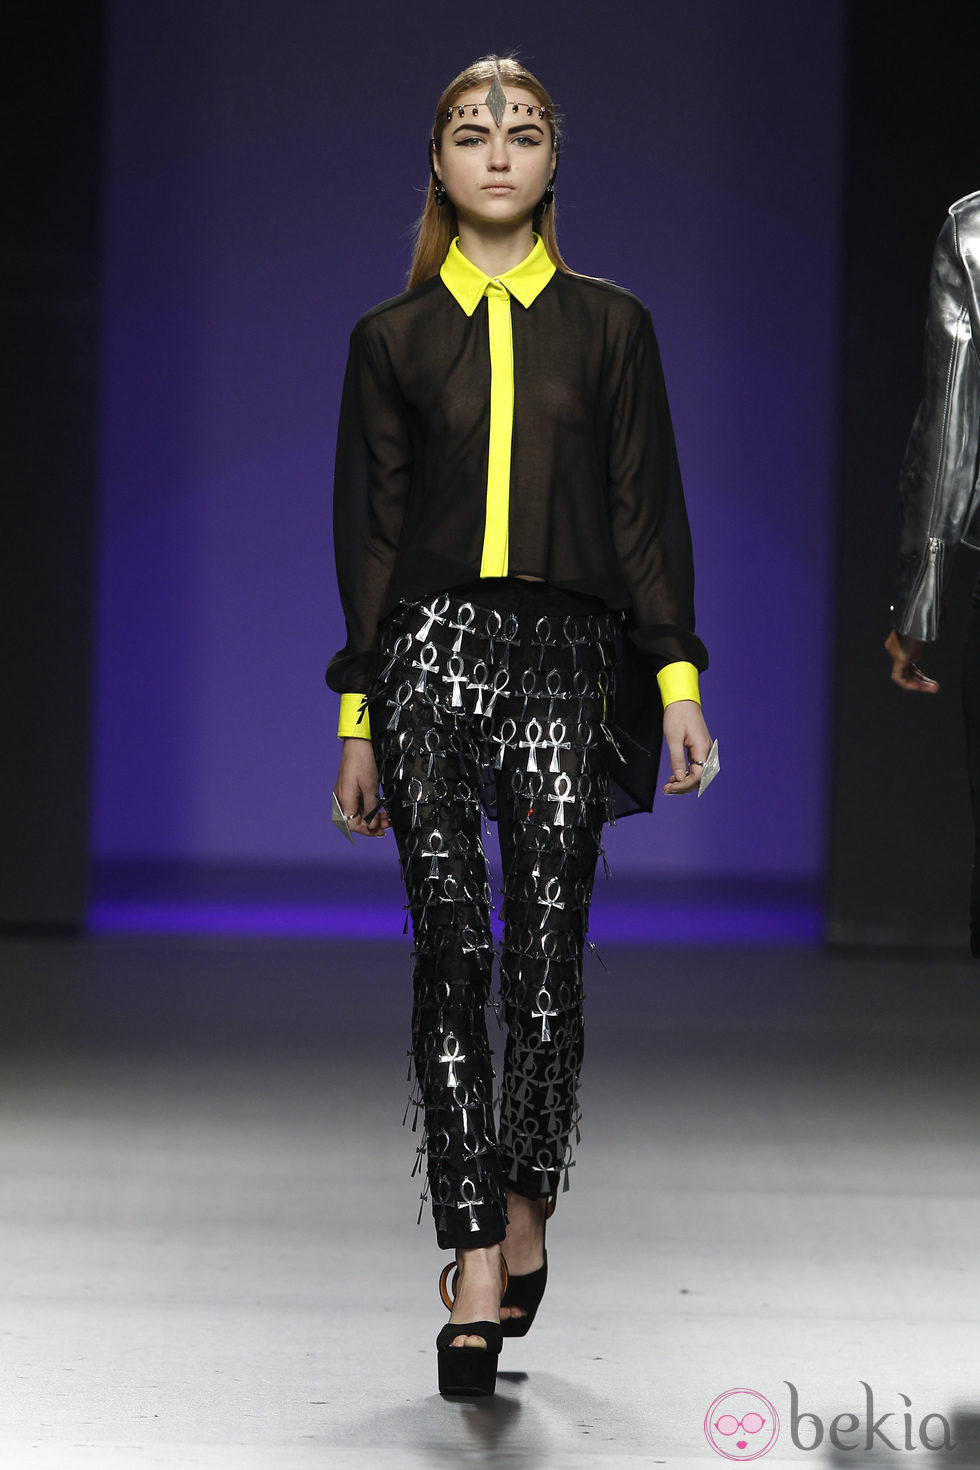 Camisa transparente negra y amarilla de María Escoté en Fashion Week Madrid